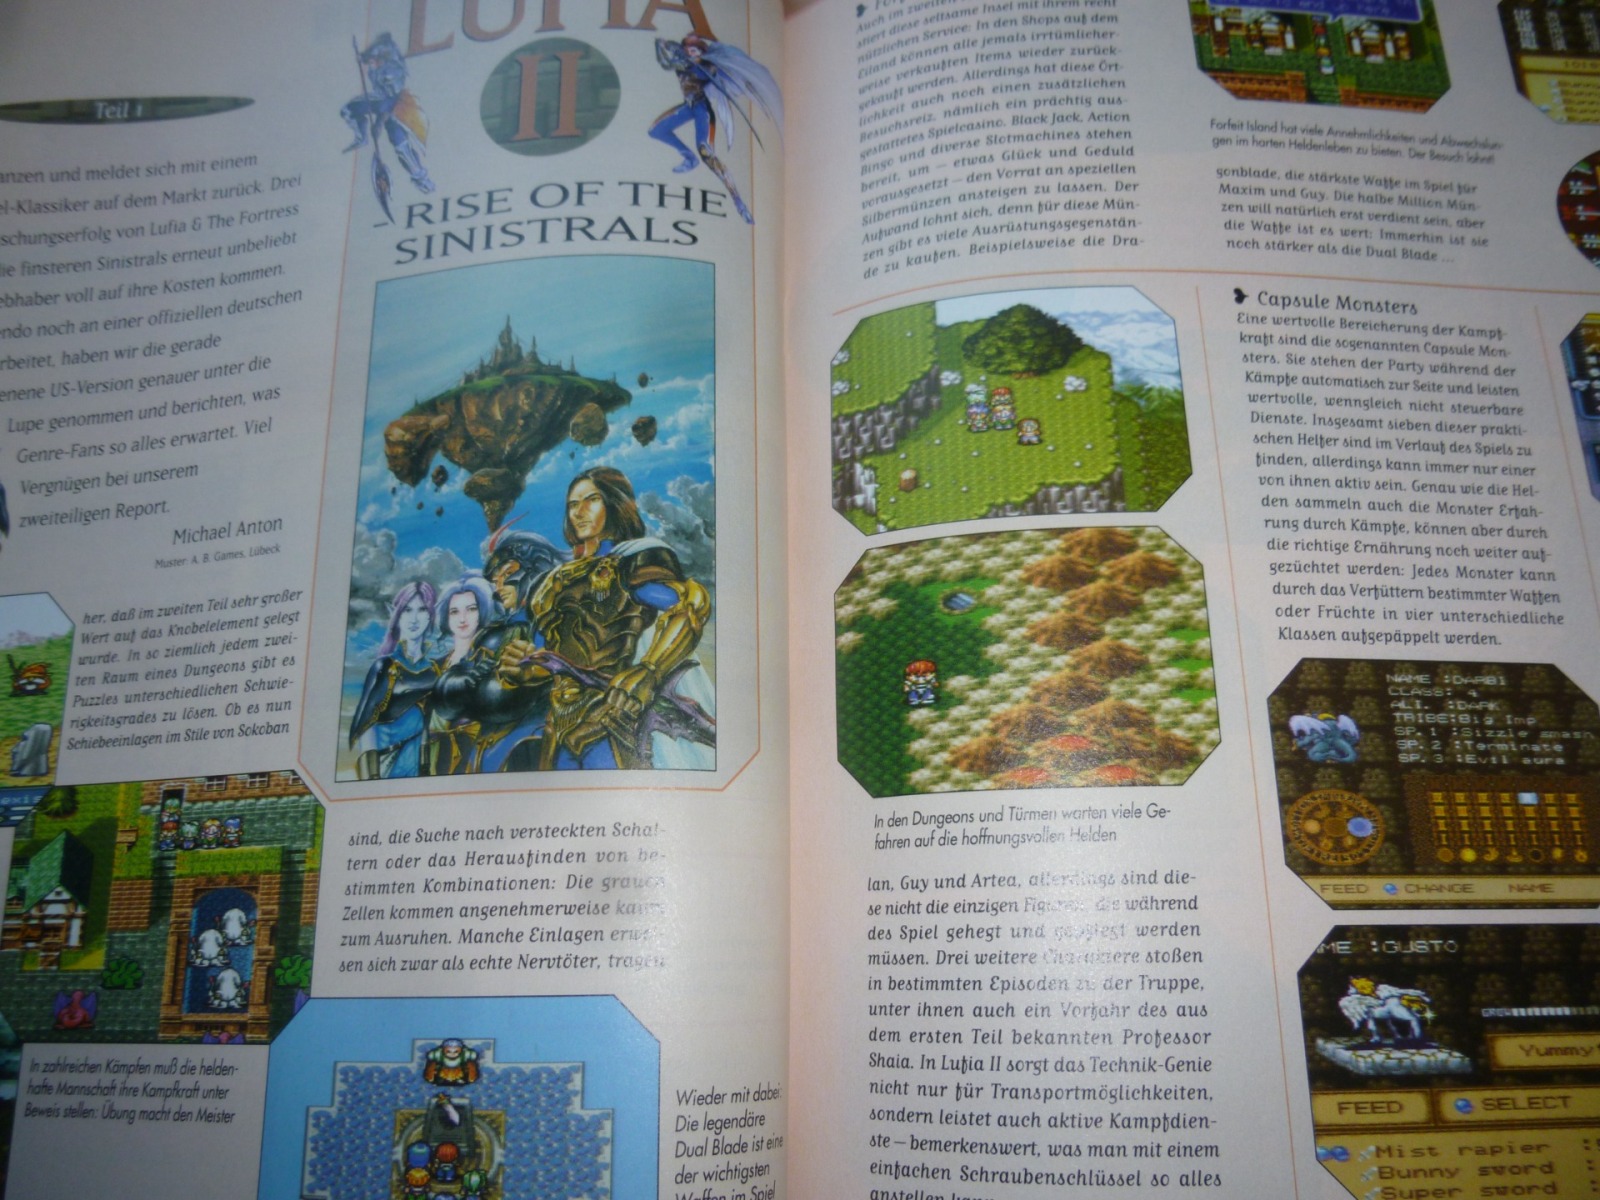 TOTAL Das unabhängige Magazin - 100 Nintendo - Ausgabe 10/96 1996 19